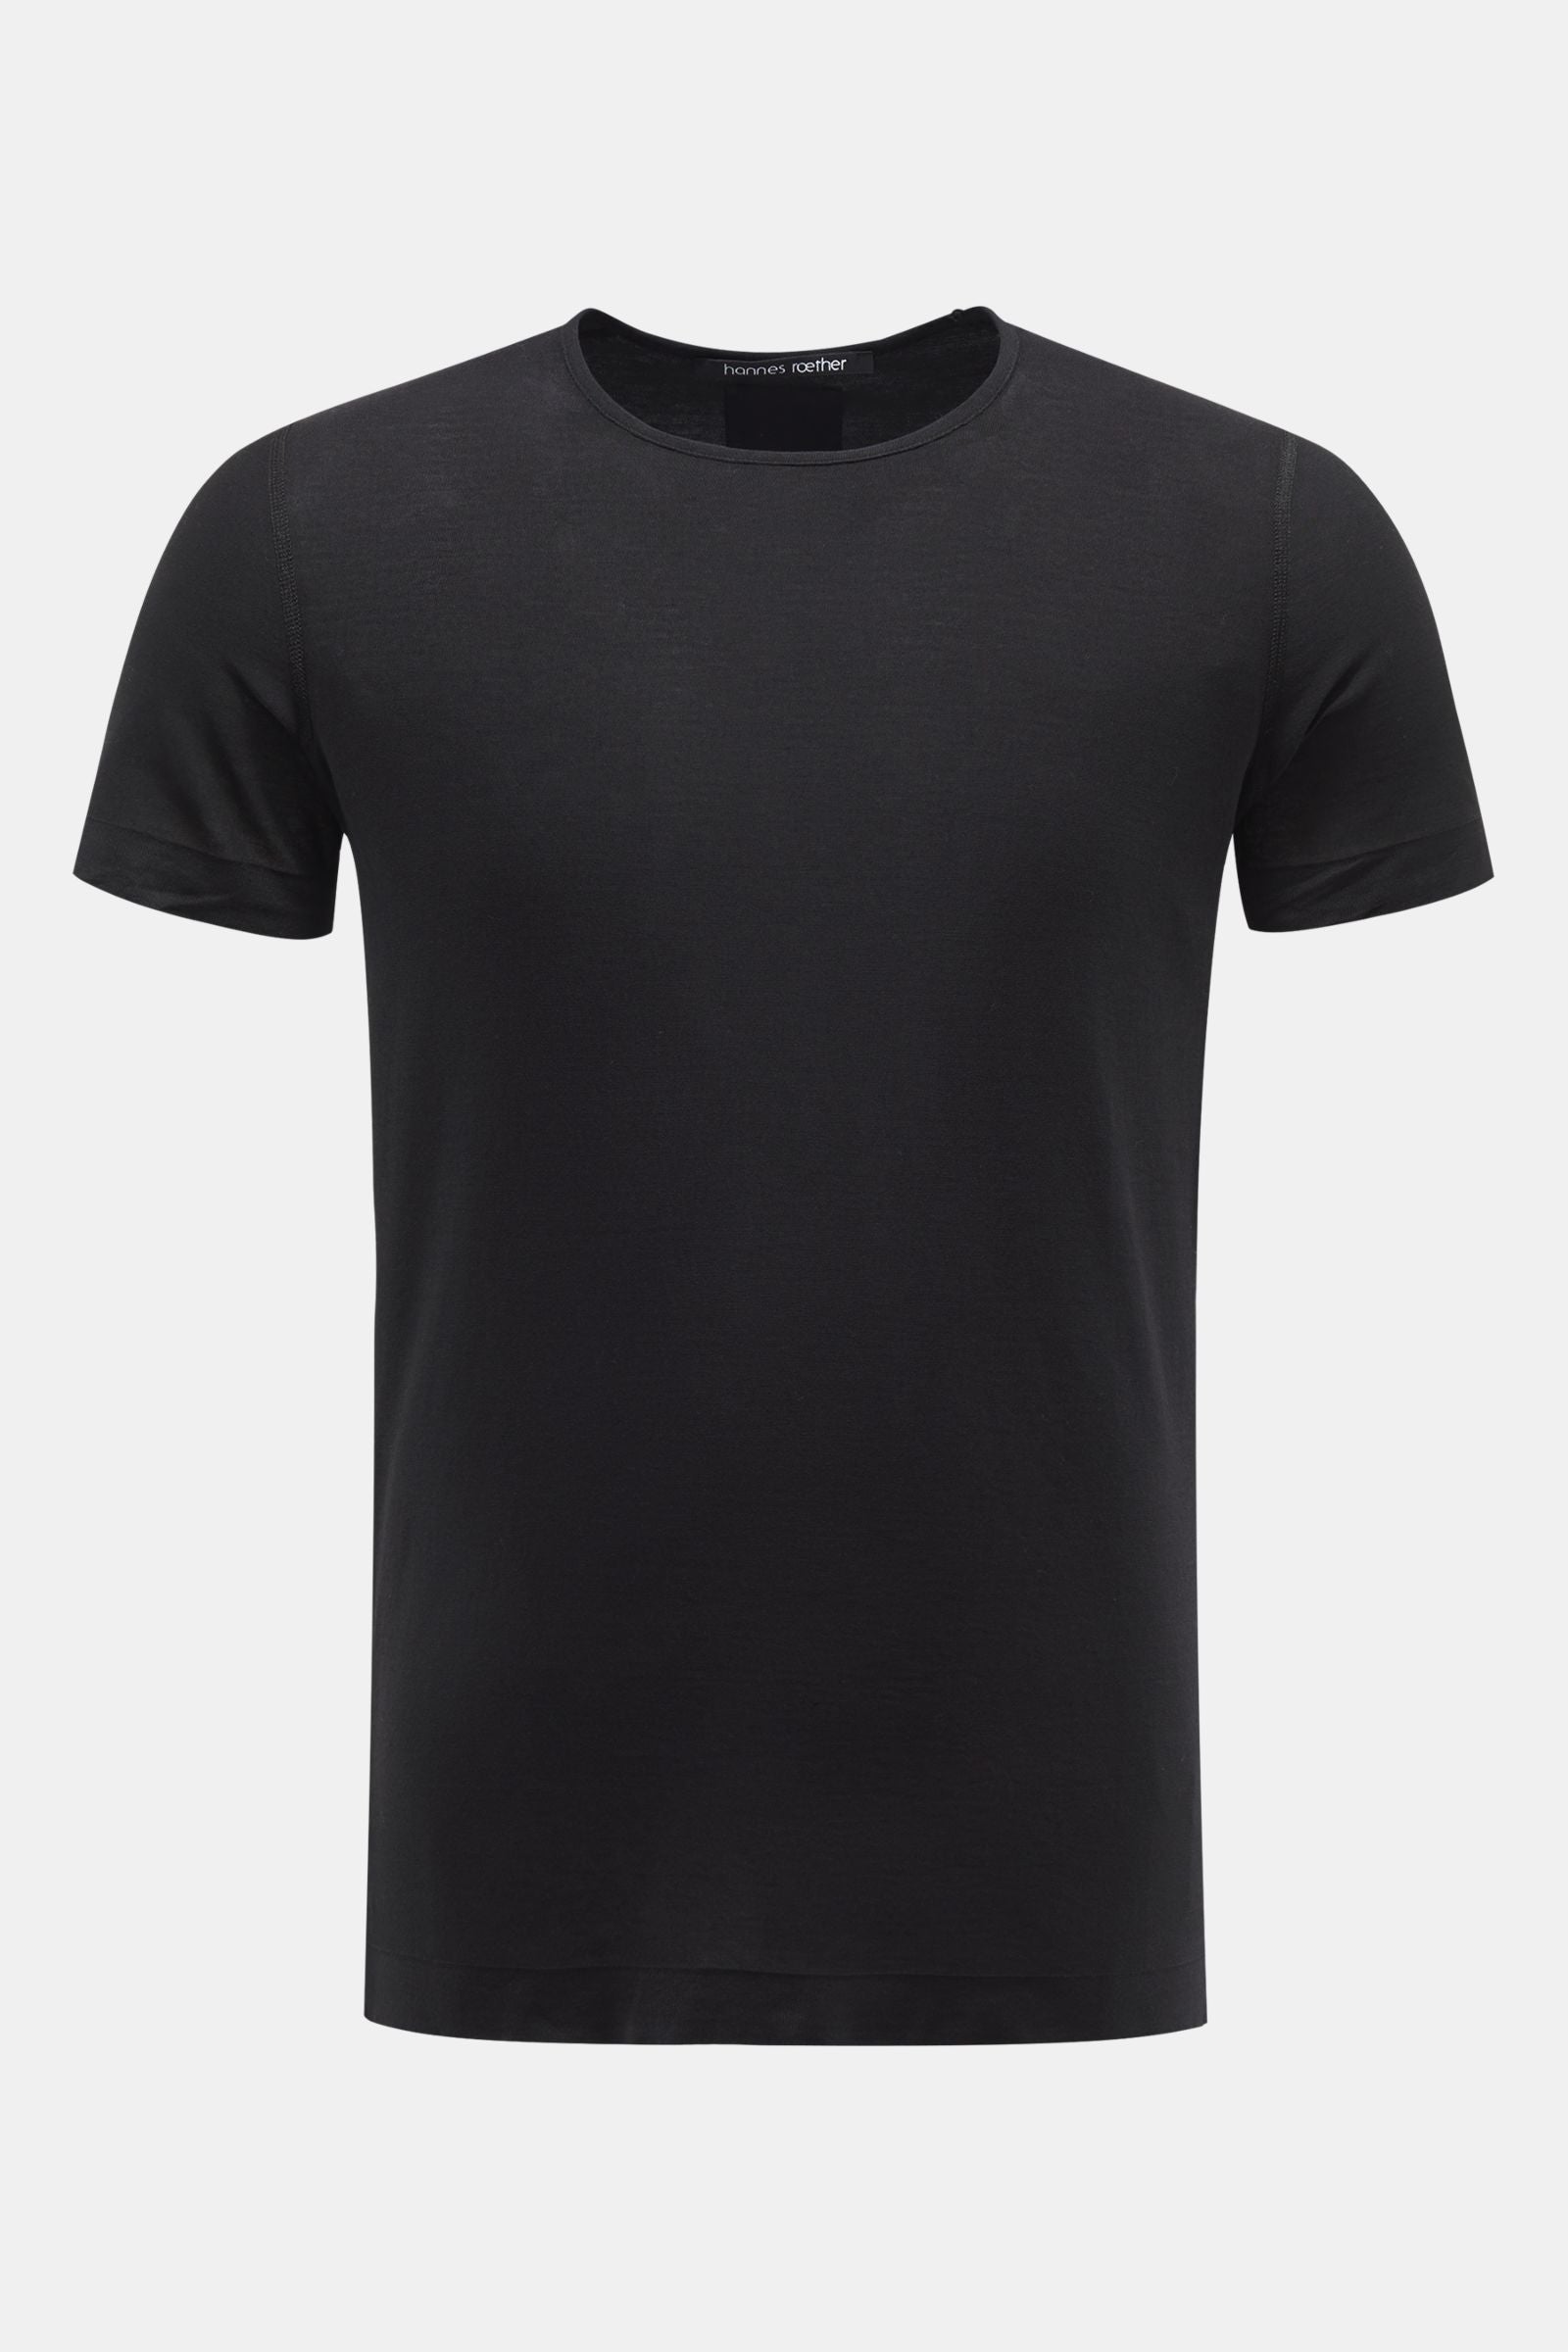 Male shirt YA35 black